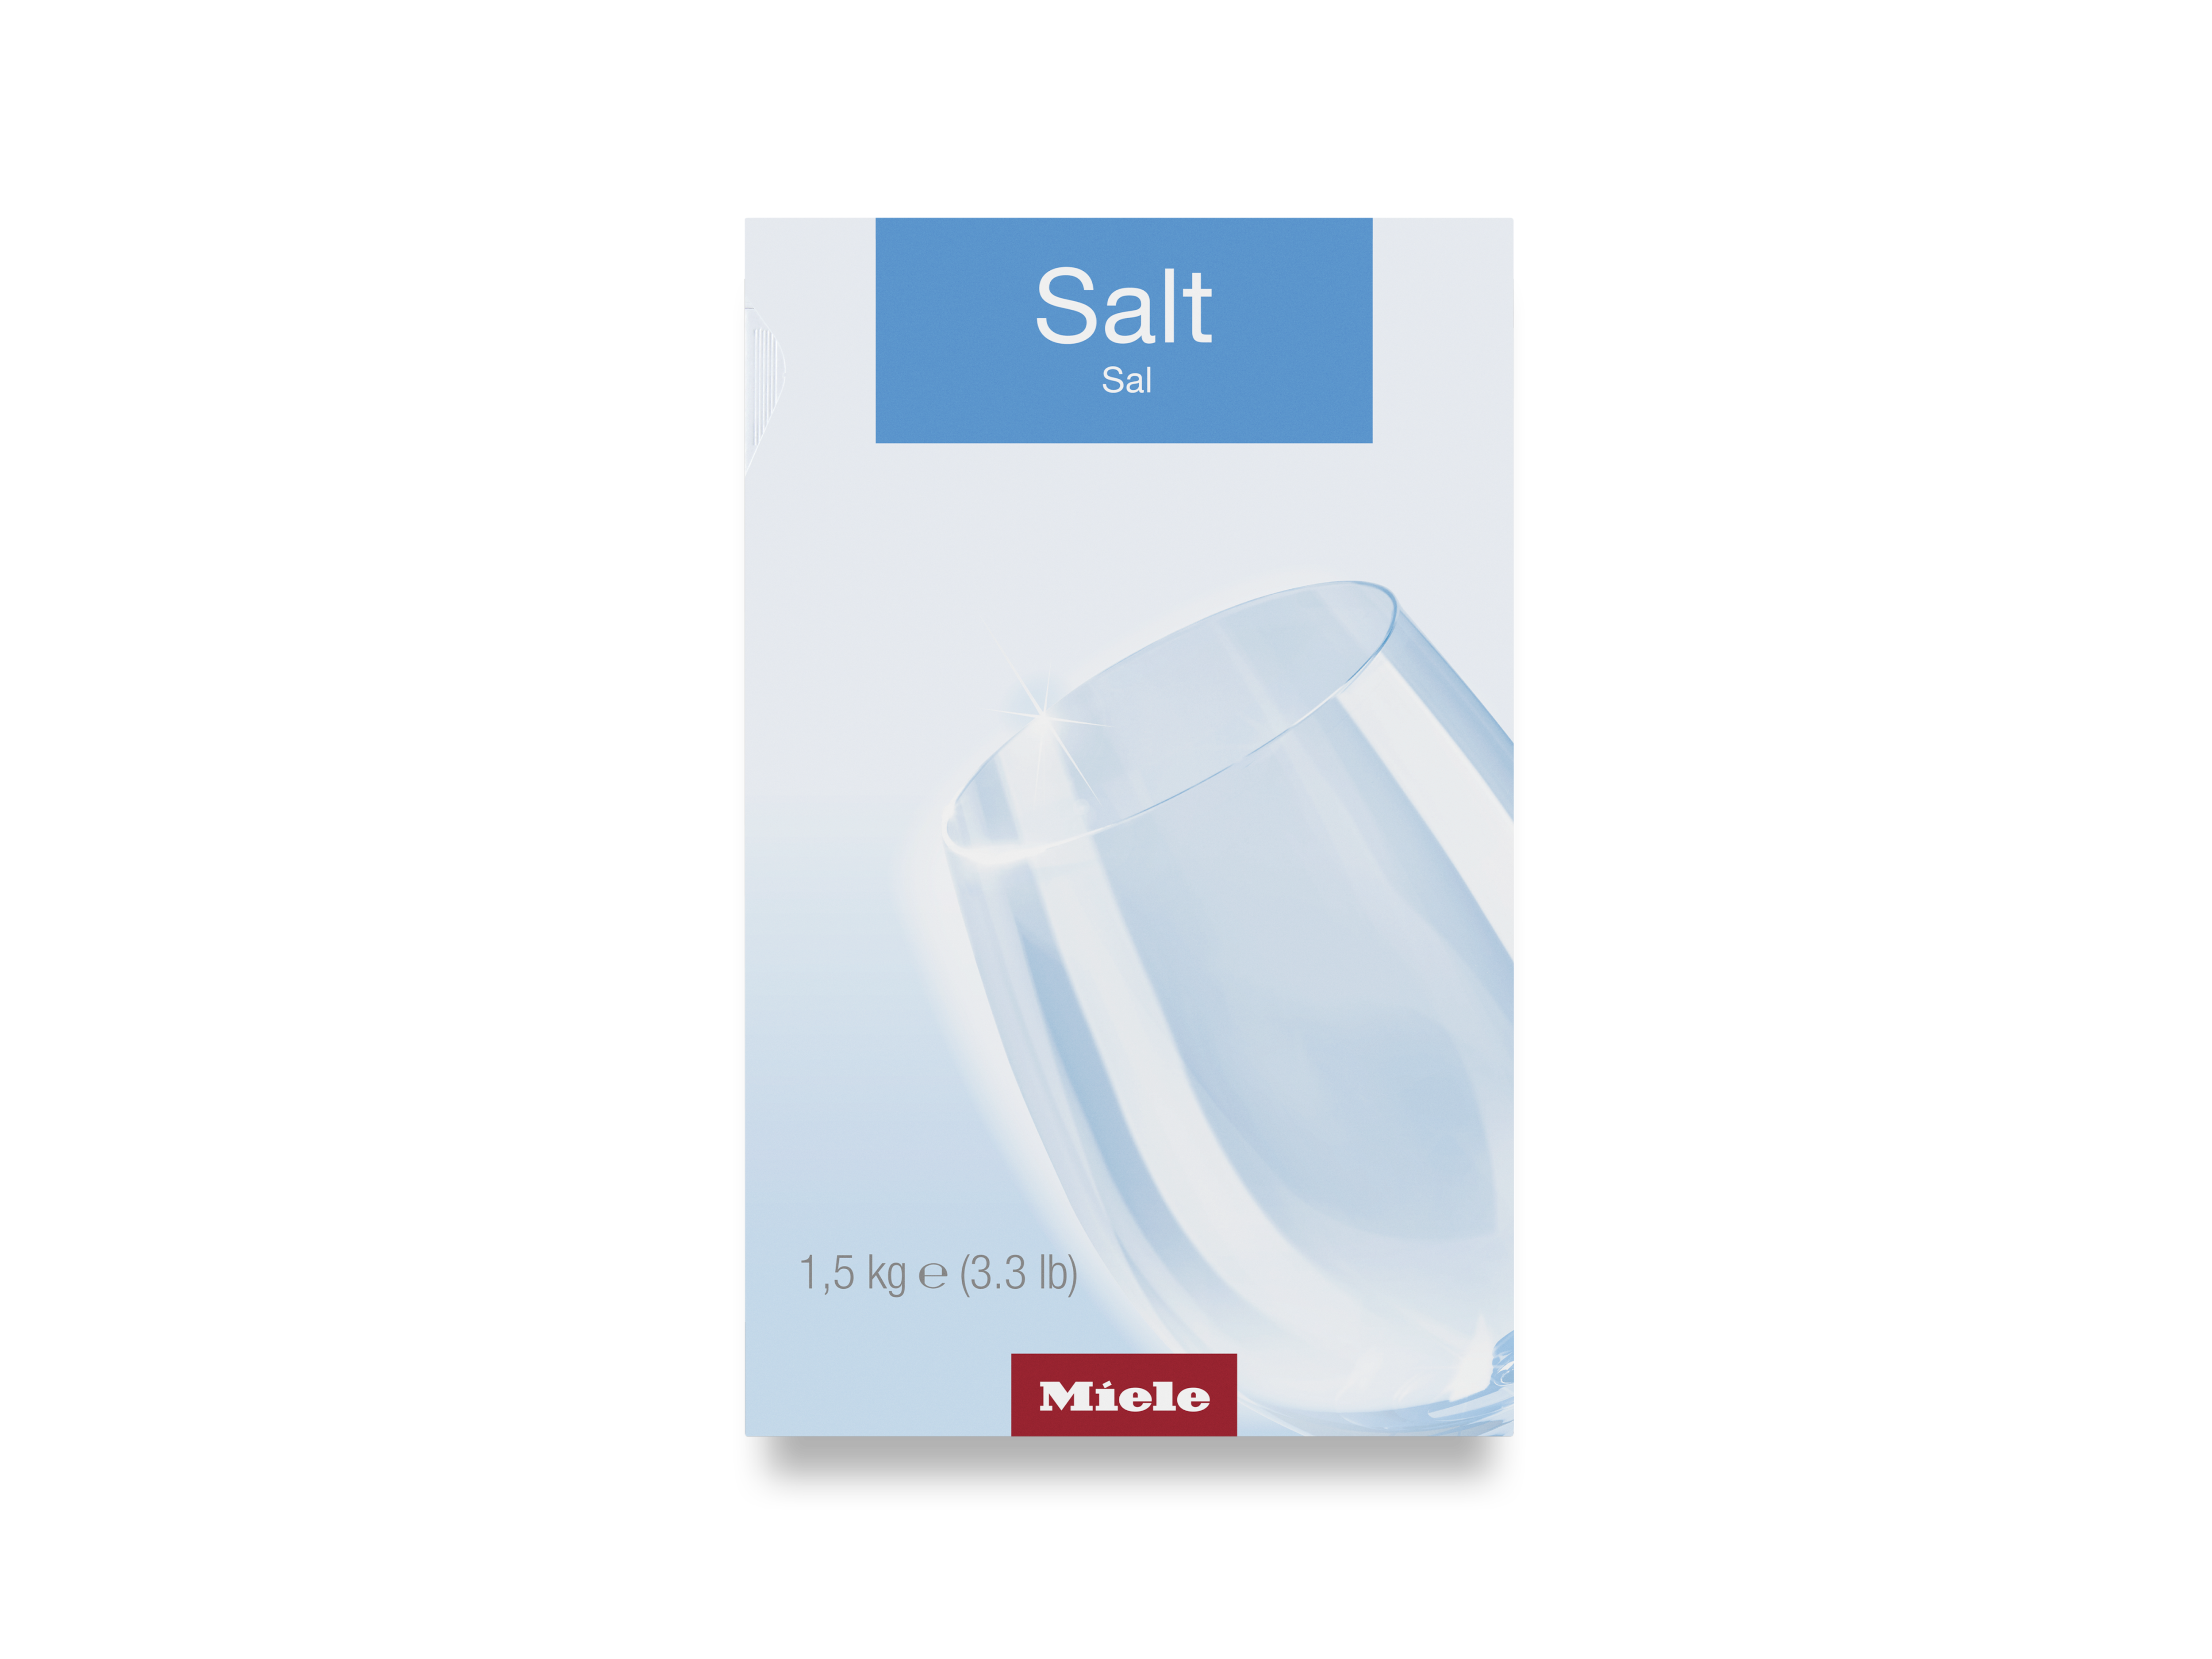 Marina Dishwasher Salt 1kg, Dishwasher Salt, Dishwashing, Cleaning, Household